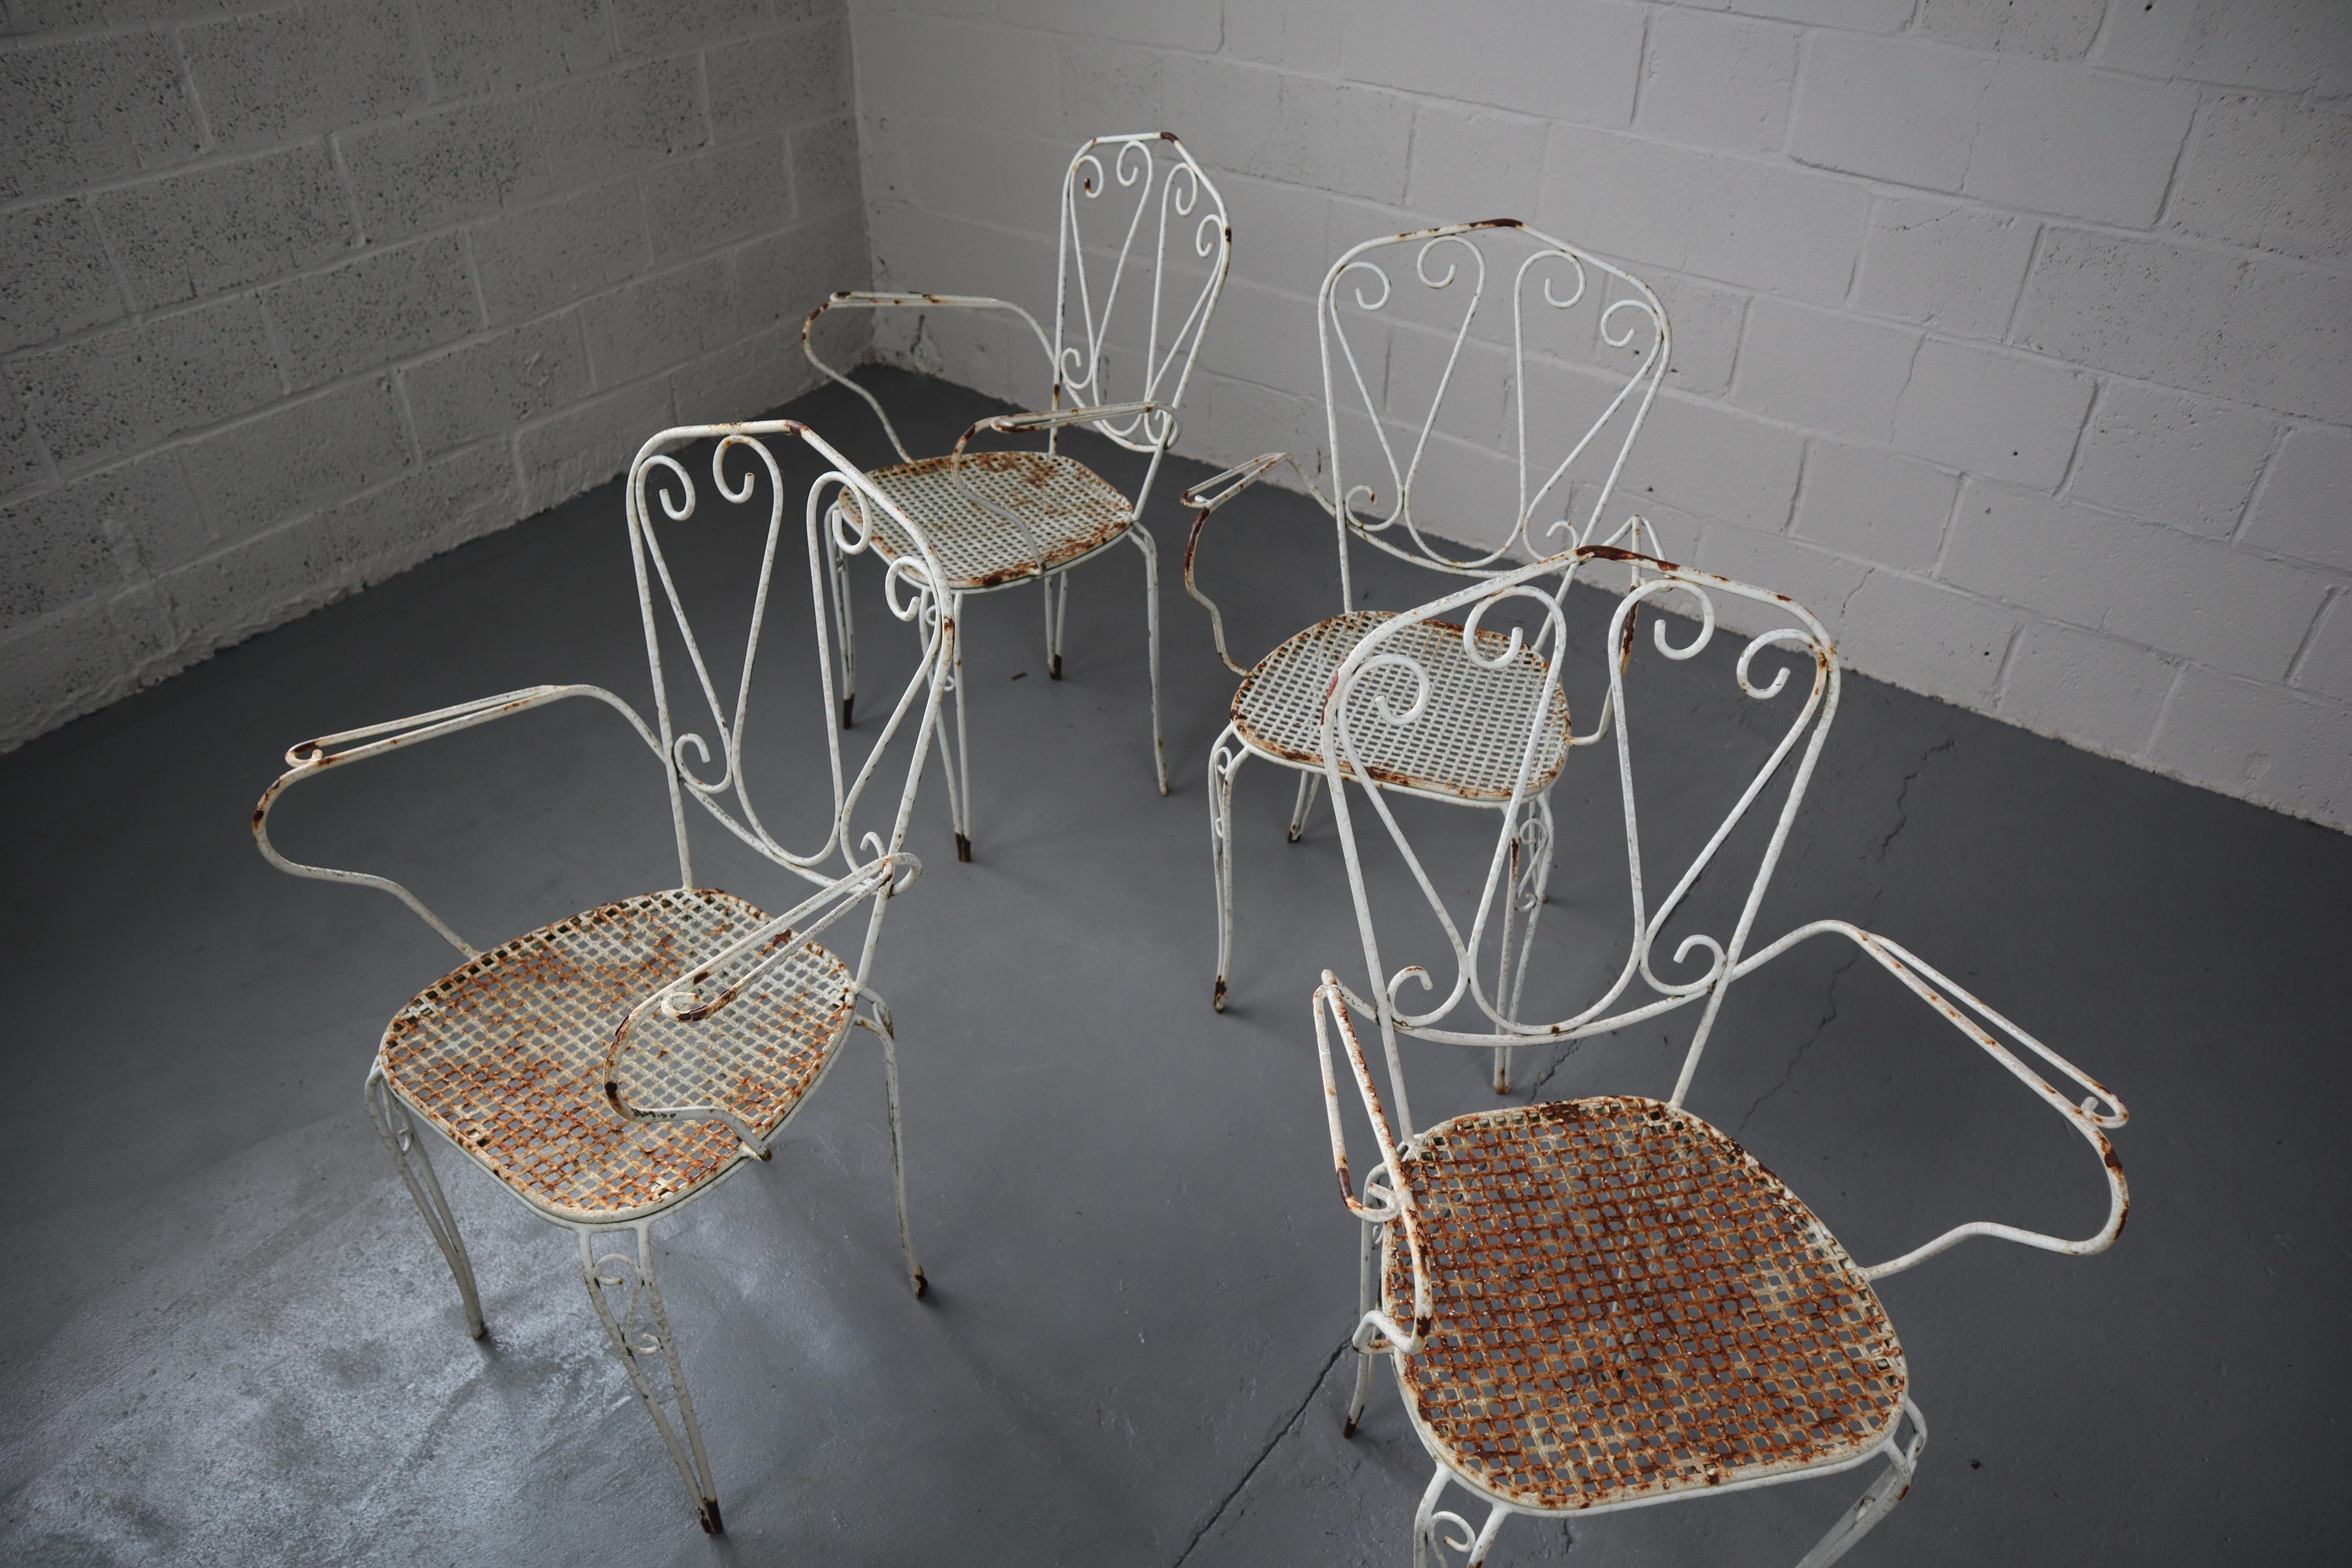 Ensemble de 4 chaises de jardin en fer forgé peint en blanc. L'assise ronde est perforée. Le dos est orné de boucles décoratives. Les pattes sont légèrement arquées.
Avec un look vintage classique de France, joliment usé par les intempéries !